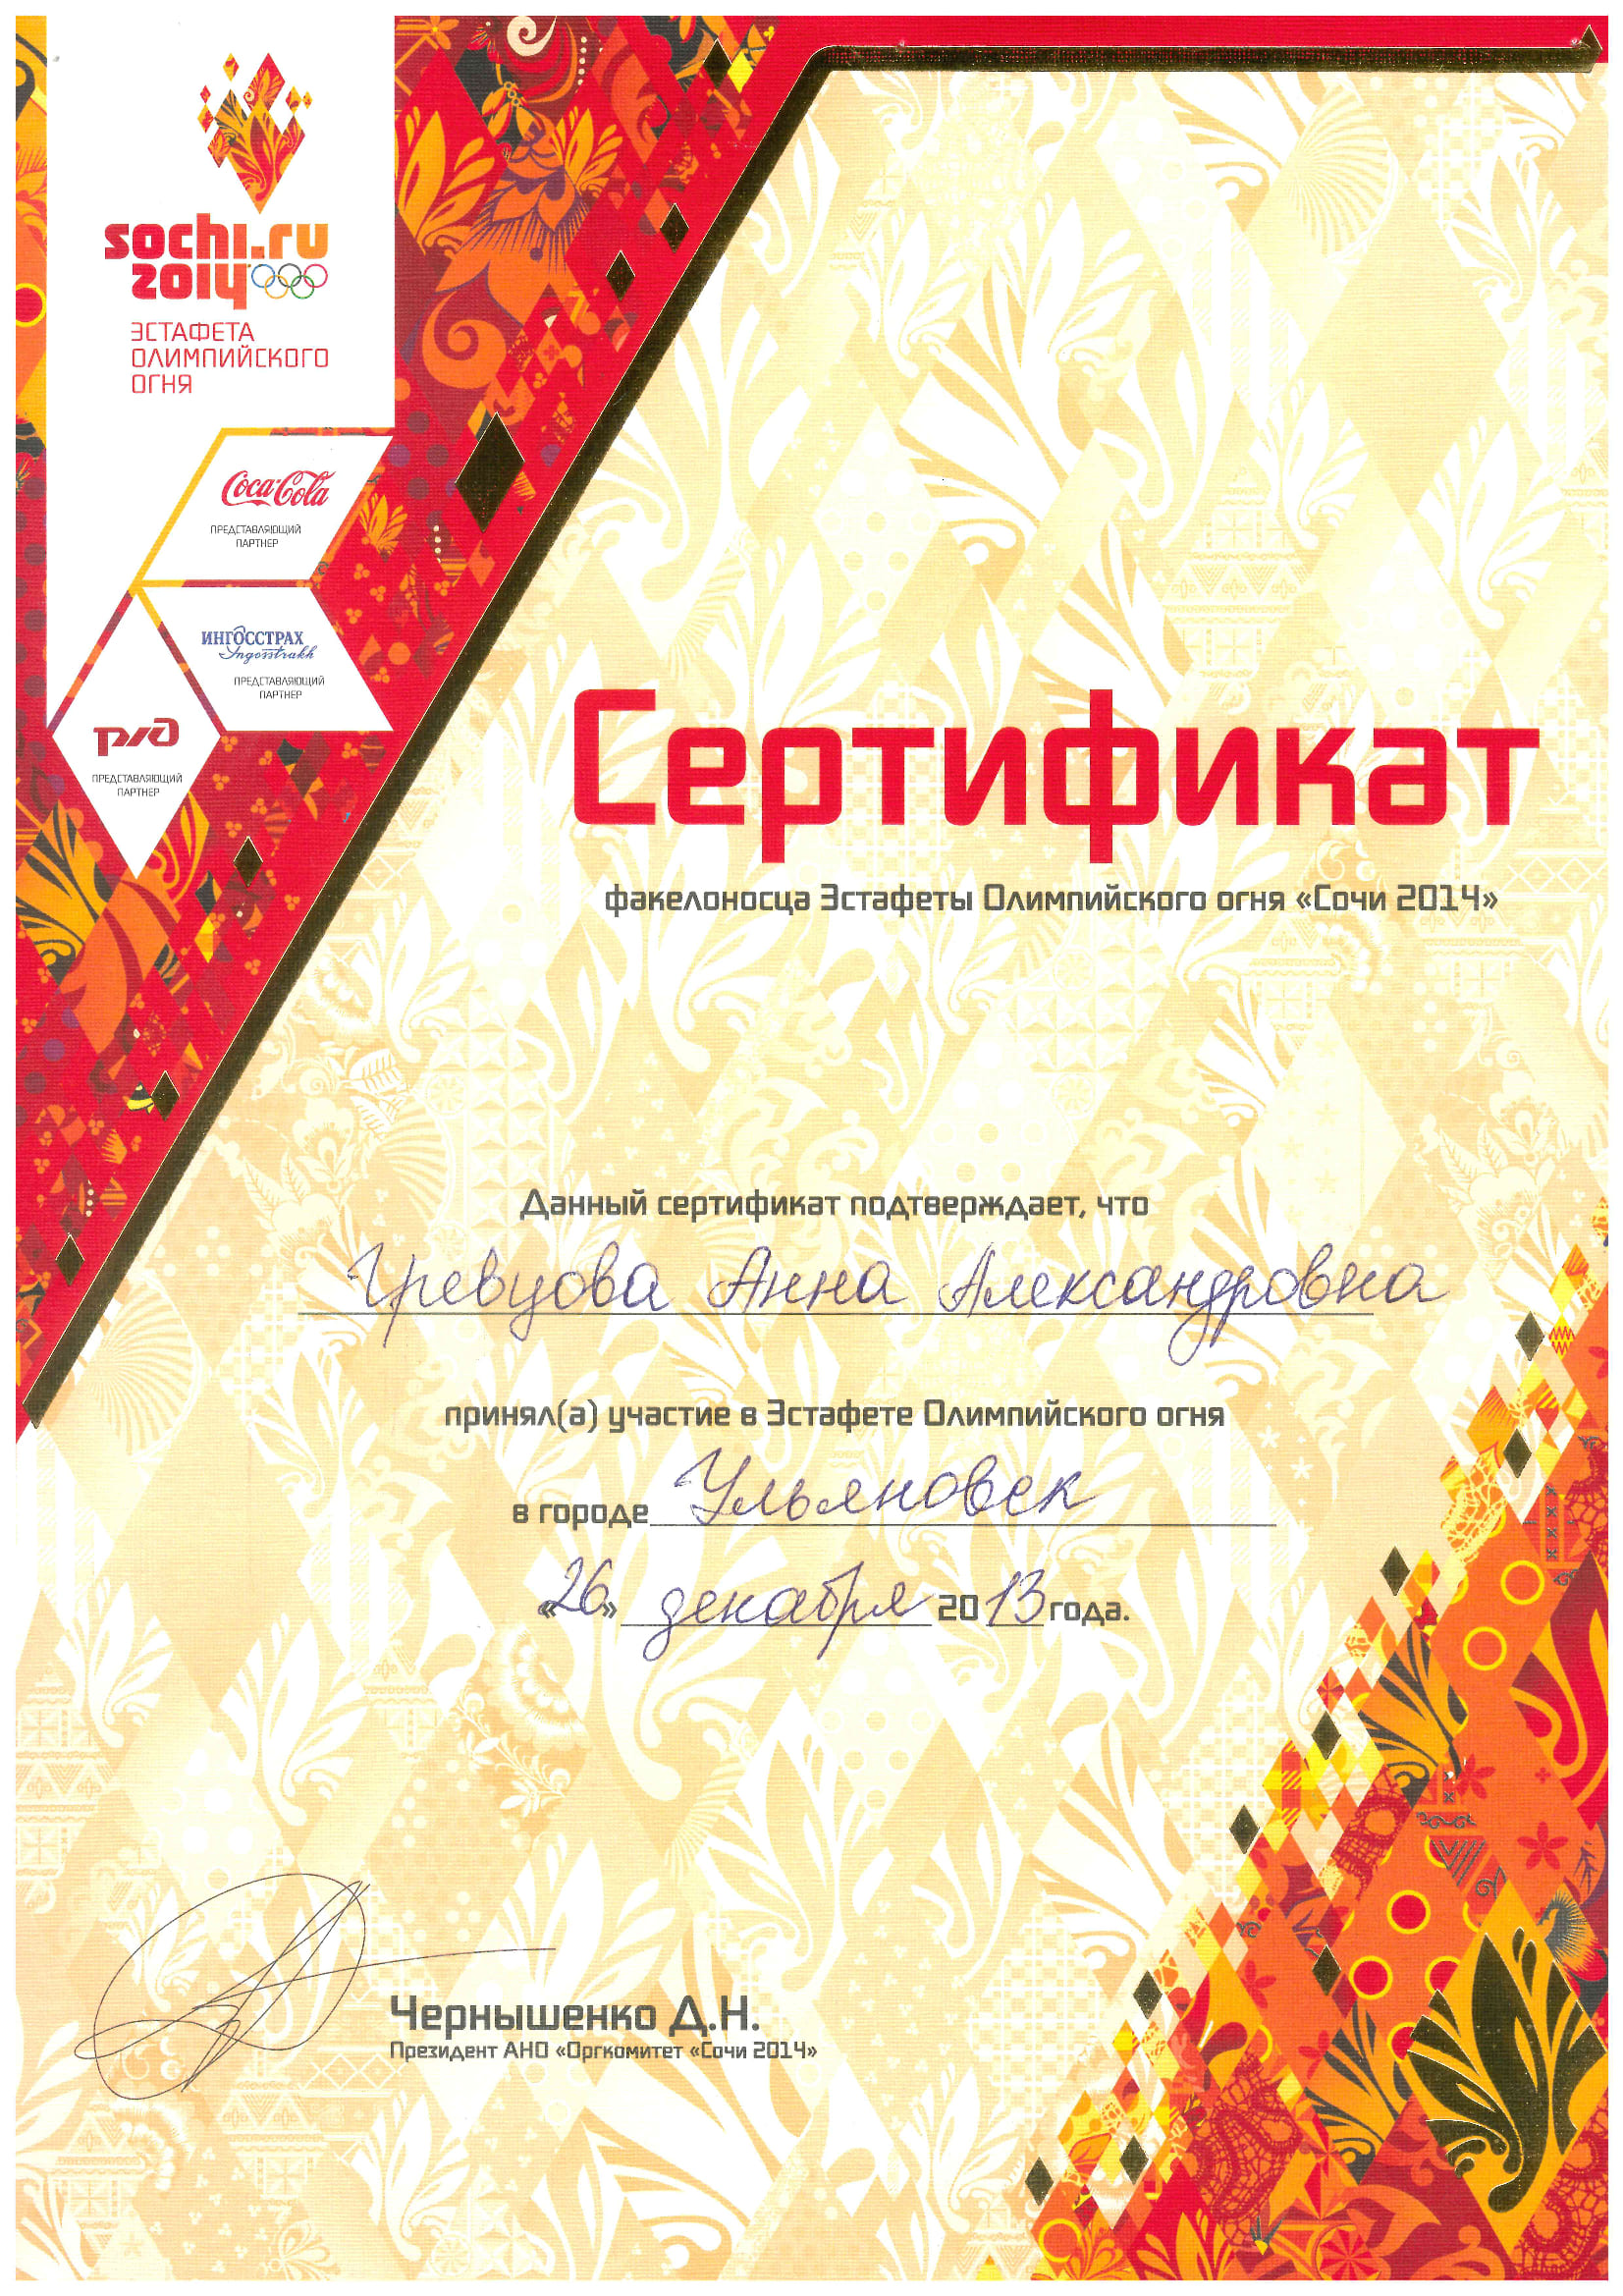 Сертификат факелоносца Эстафеты Олимпийского огня 